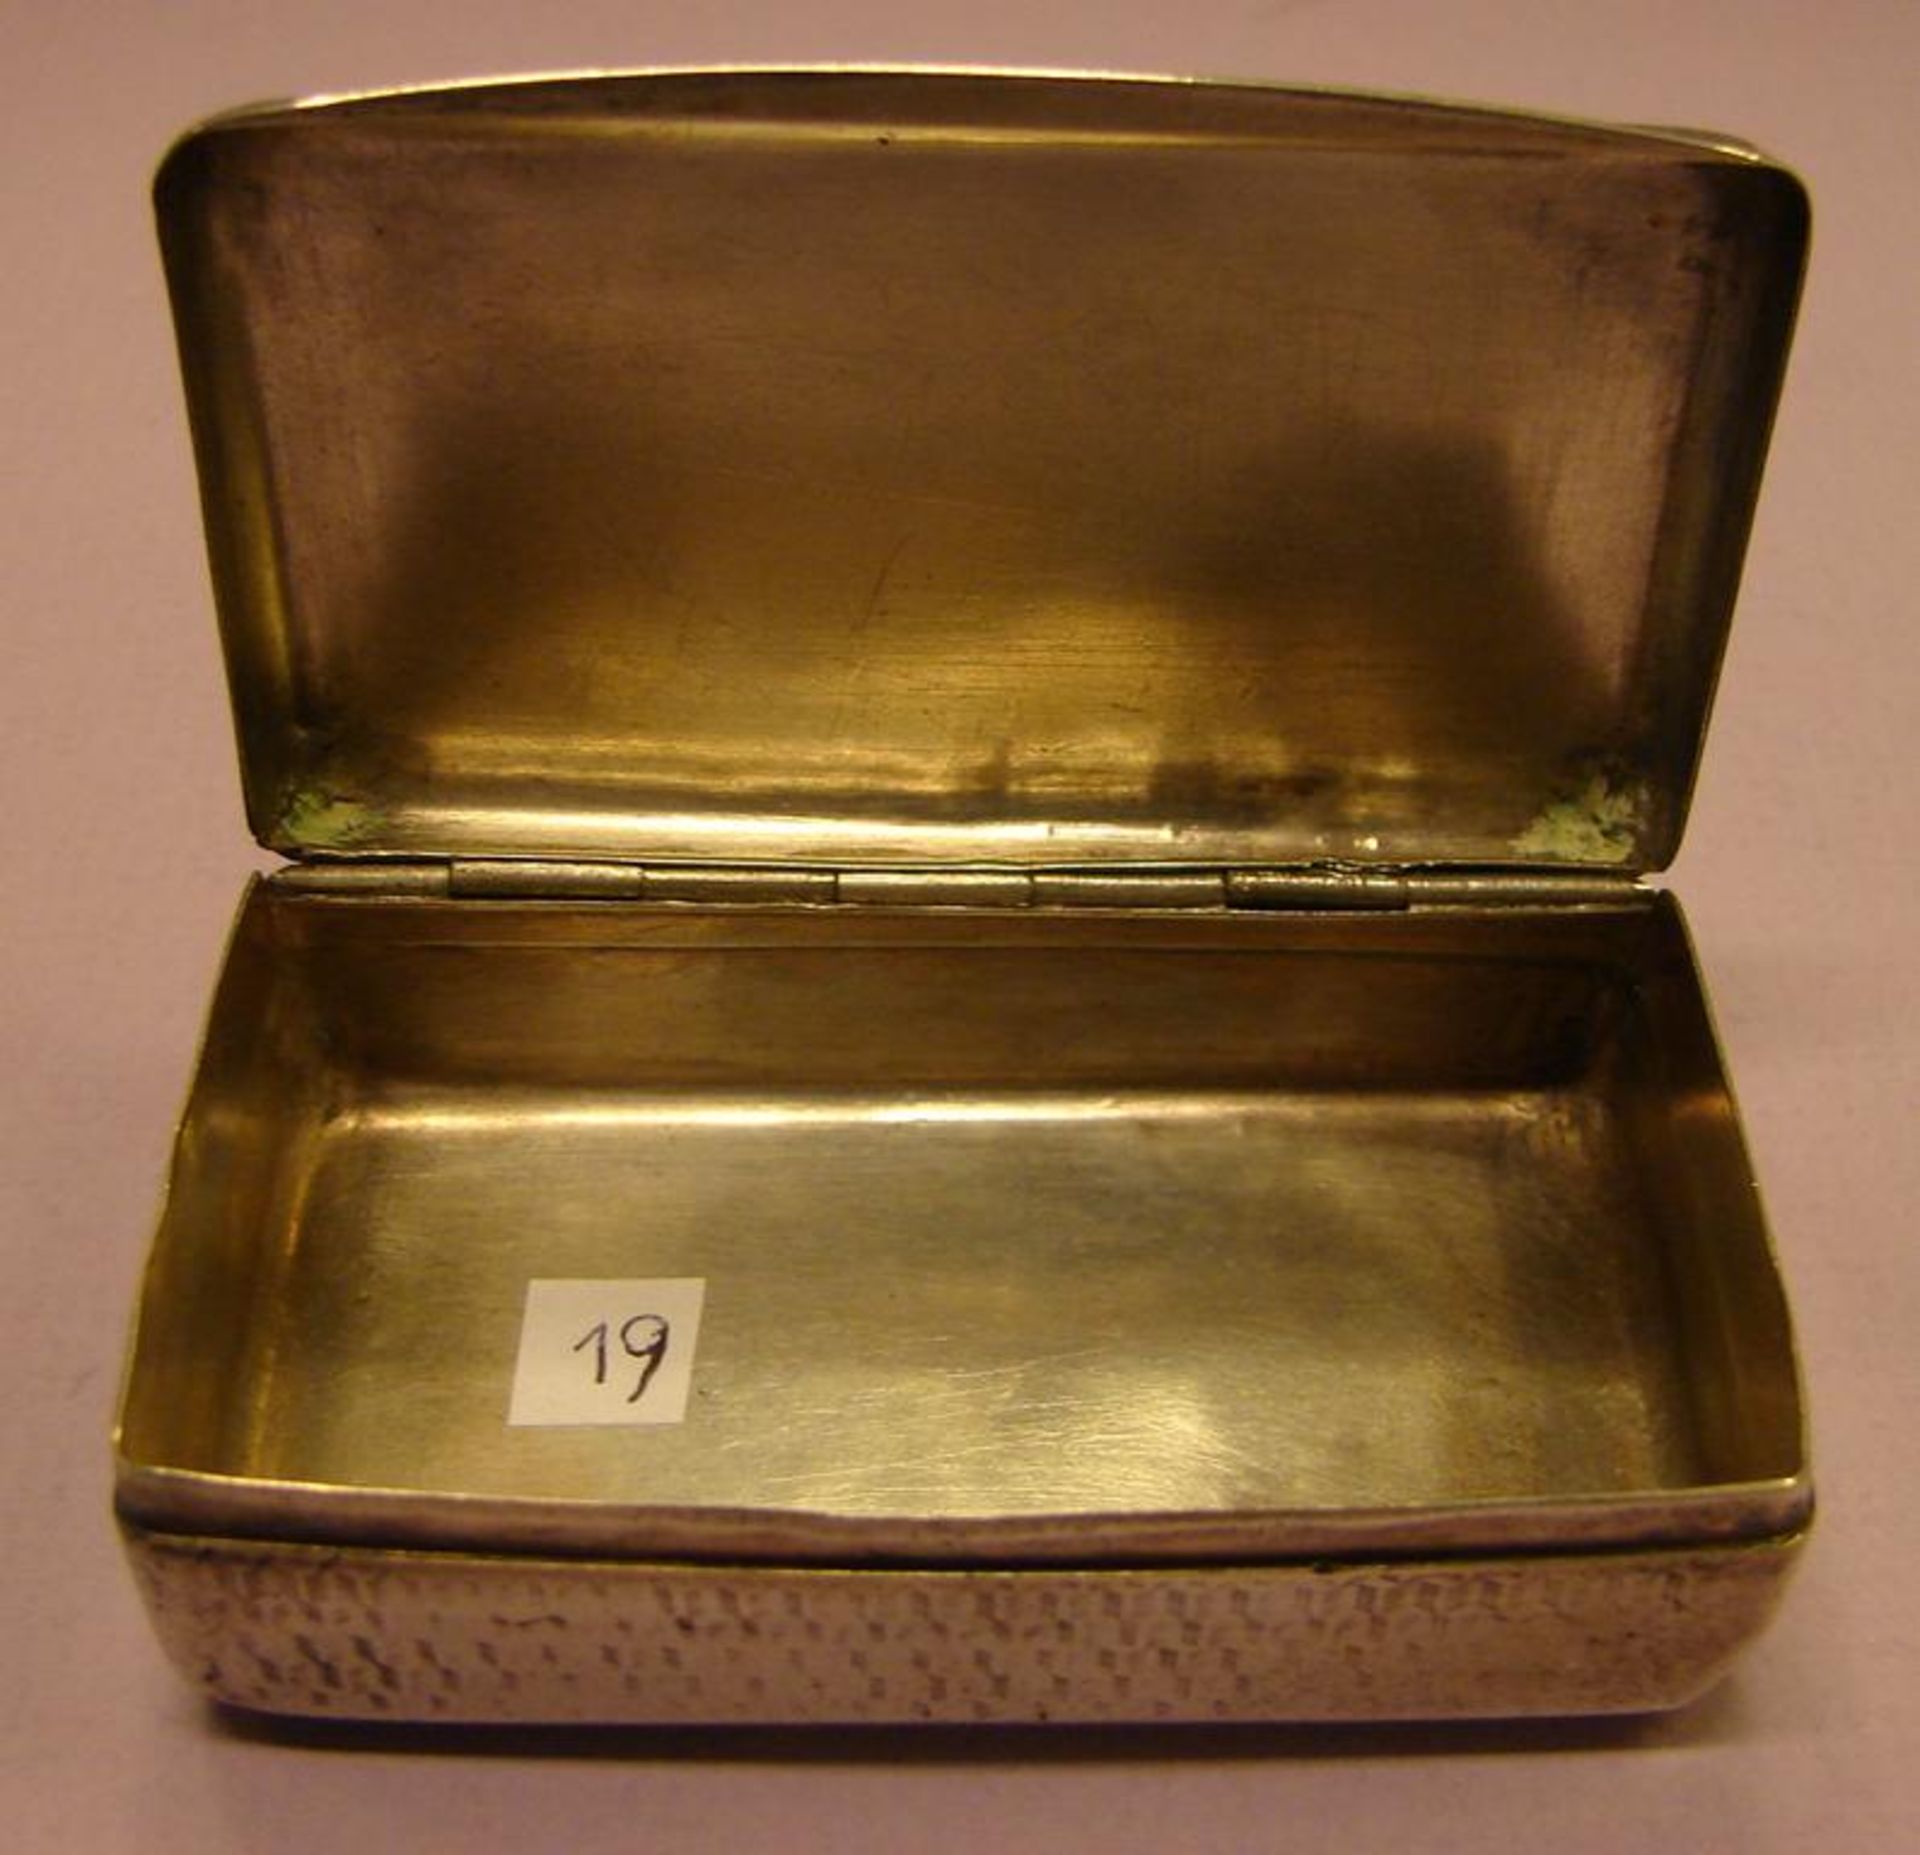 Dose, Silber, gemarkt, um 1900, H.ca. 2, B. 7, T. 4 cm- - -22.00 % buyer's premium on the hammer - Bild 3 aus 3